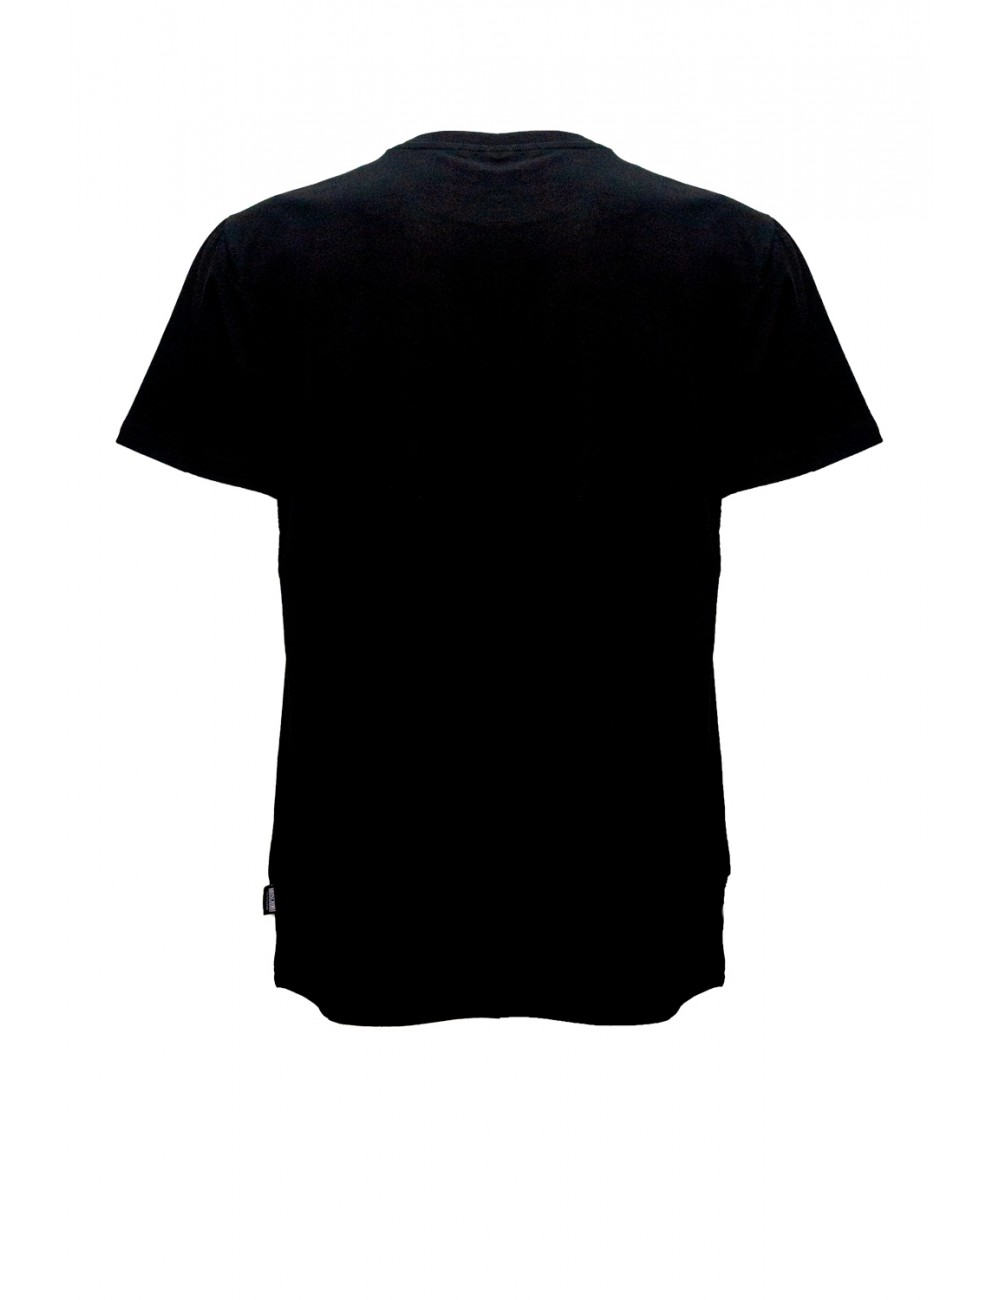 t-shirt moschino UOMO NERA 0555 - V1A0703 - 4406 vista frontale